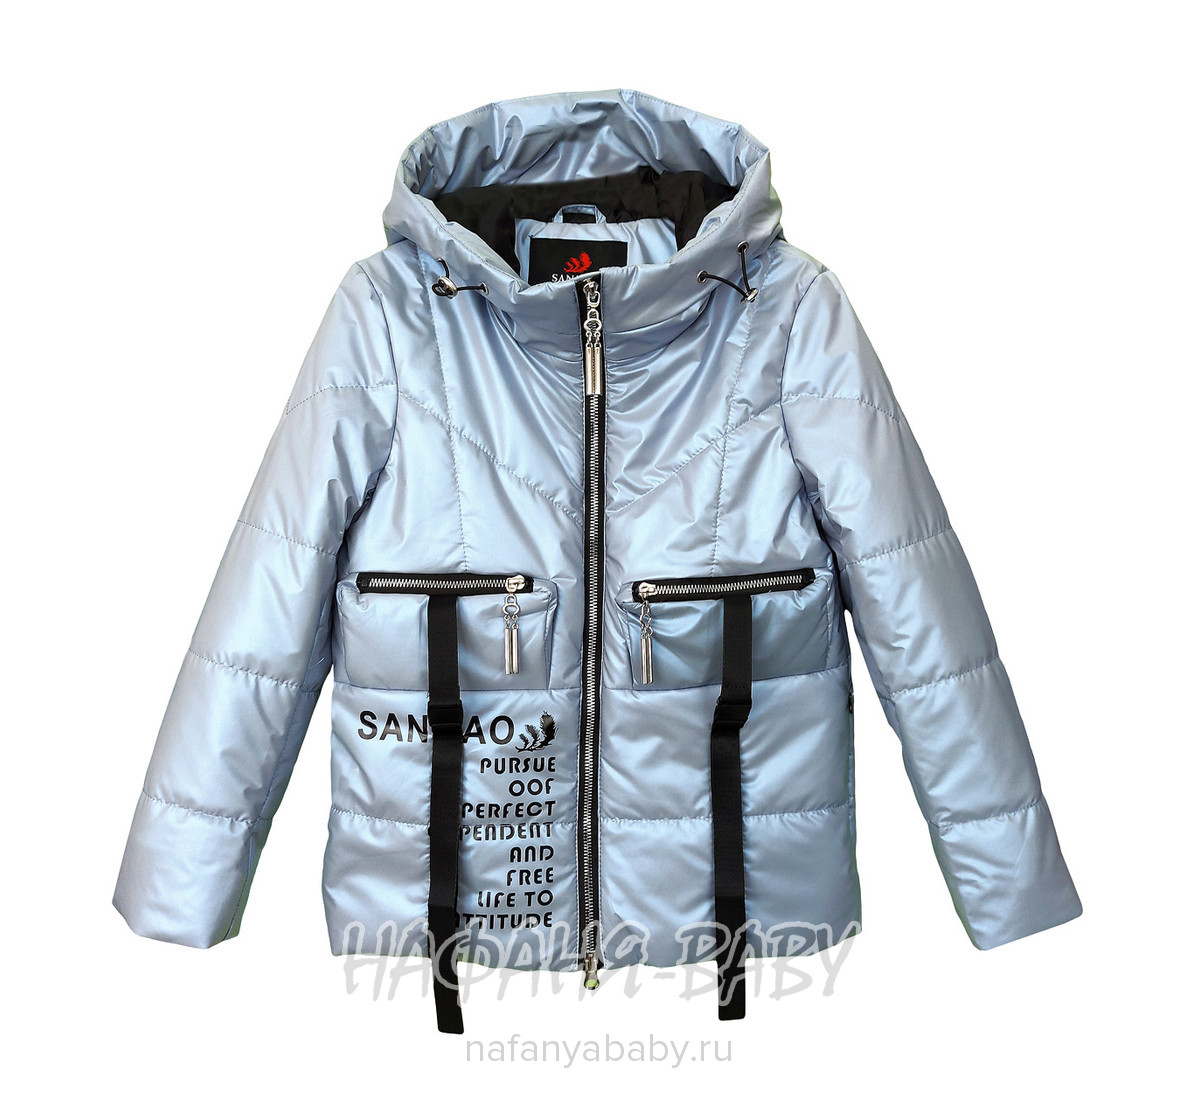 Демисезонная куртка для девочки SANMAO, купить в интернет магазине Нафаня. арт: 215.